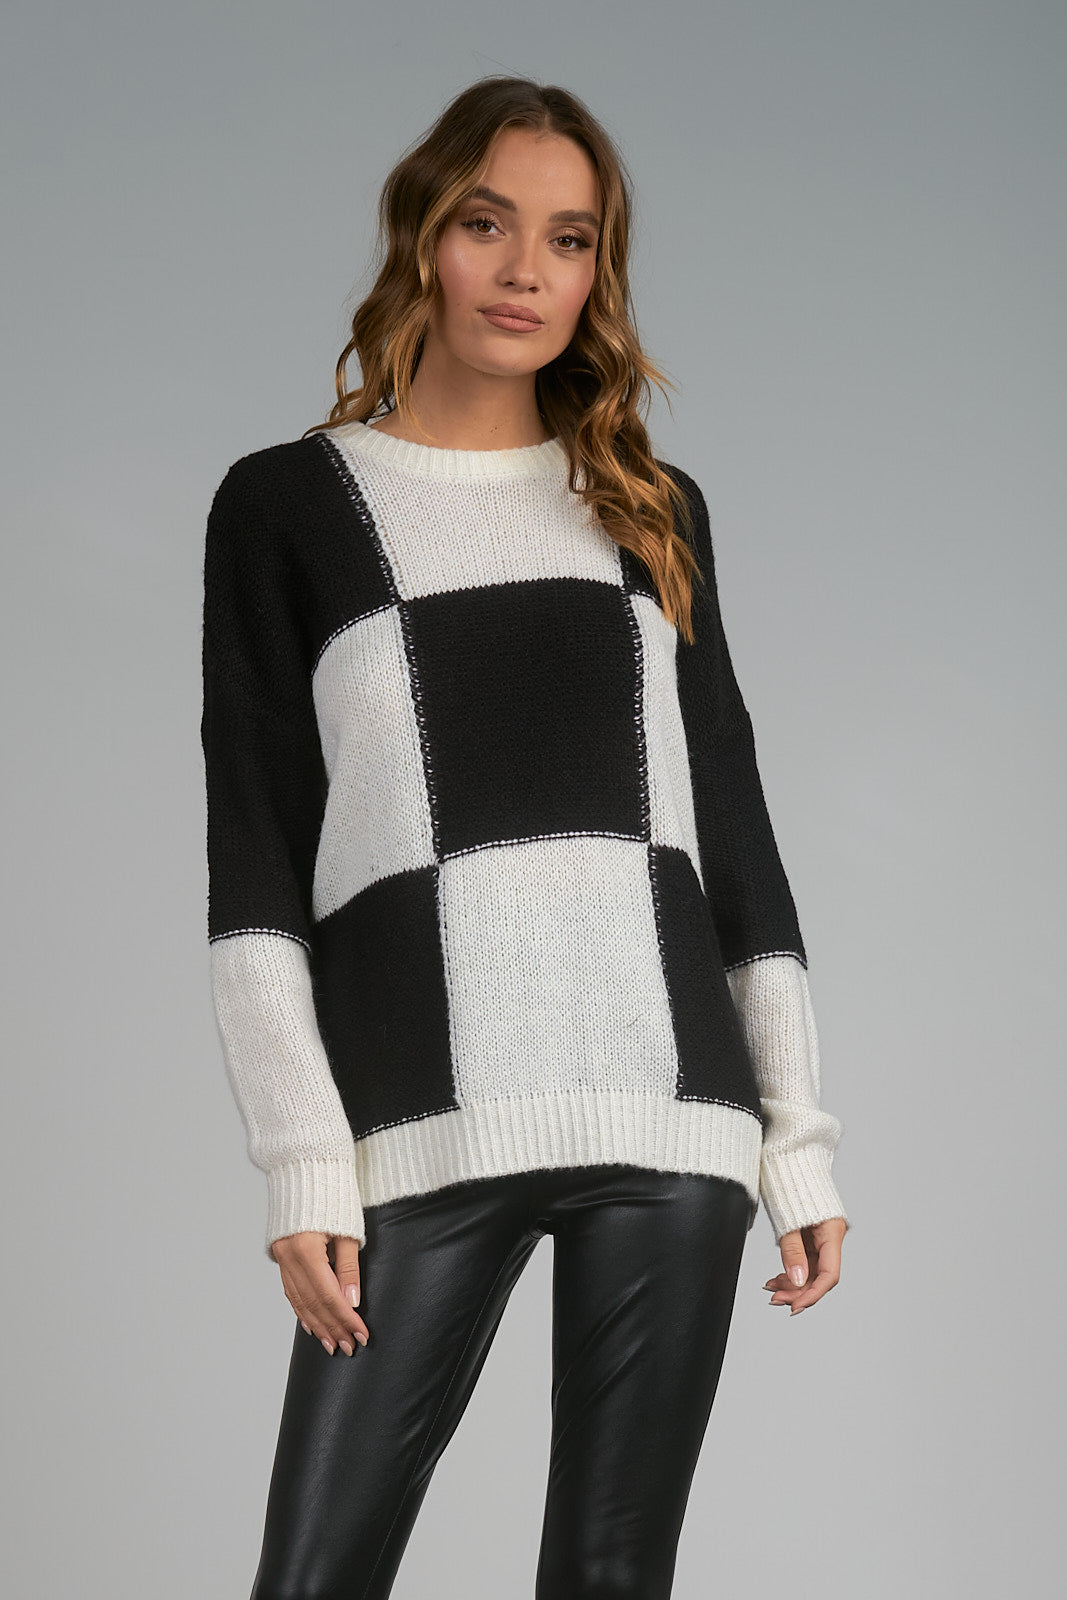 Checkerboard Crewneck Sweater